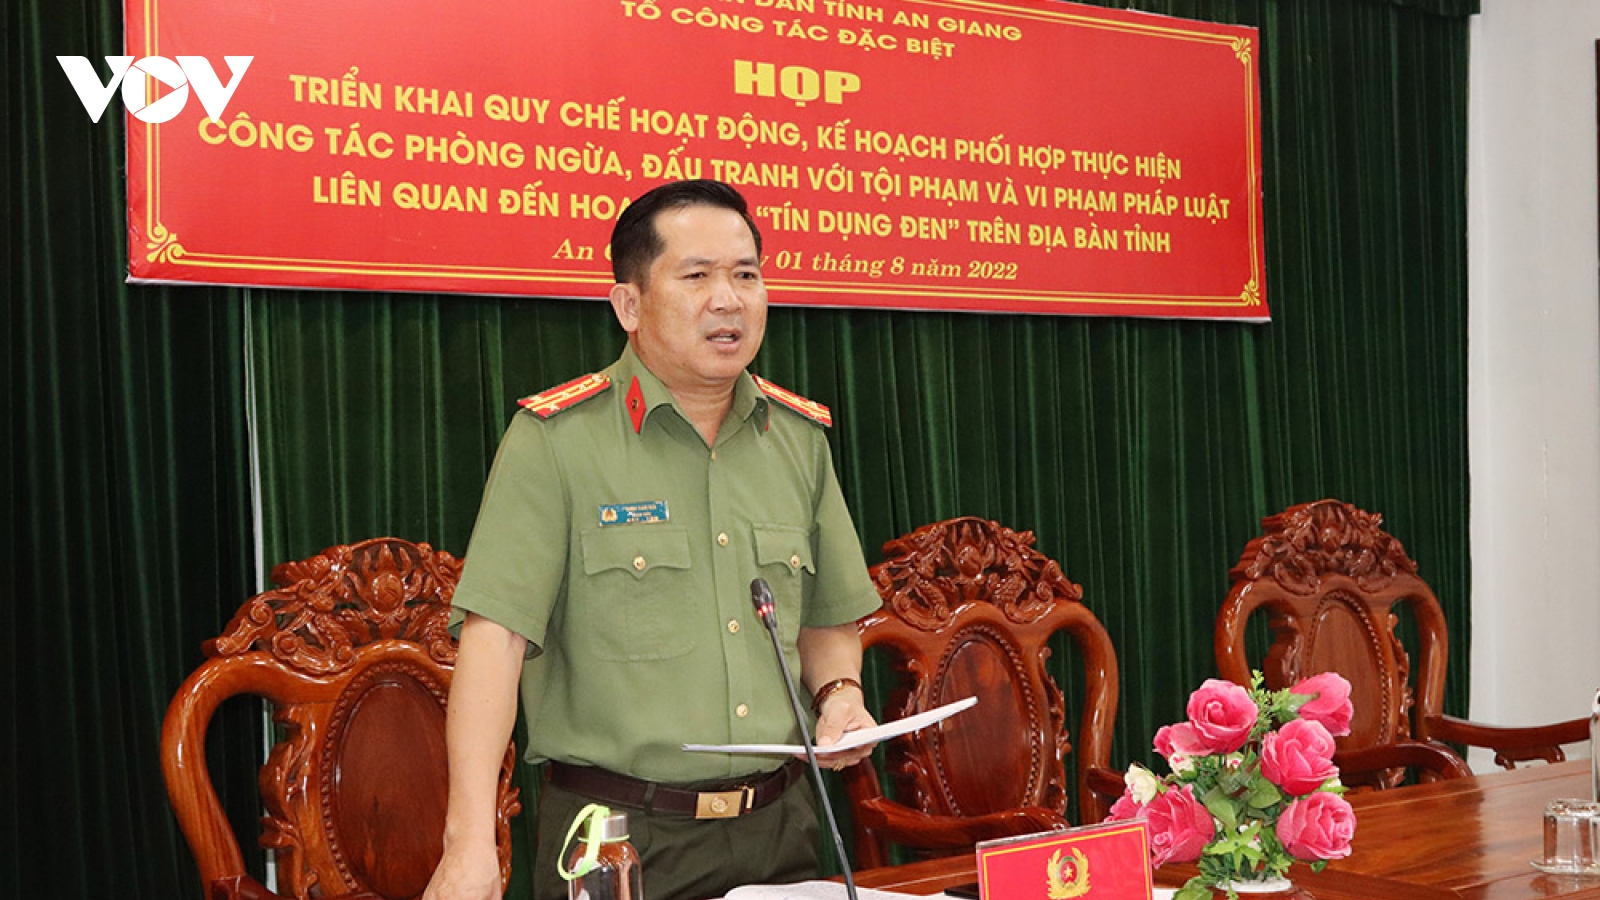 Nóng 24h: Đại tá Đinh Văn Nơi nhận nhiệm vụ triệt phá tội phạm tín dụng đen